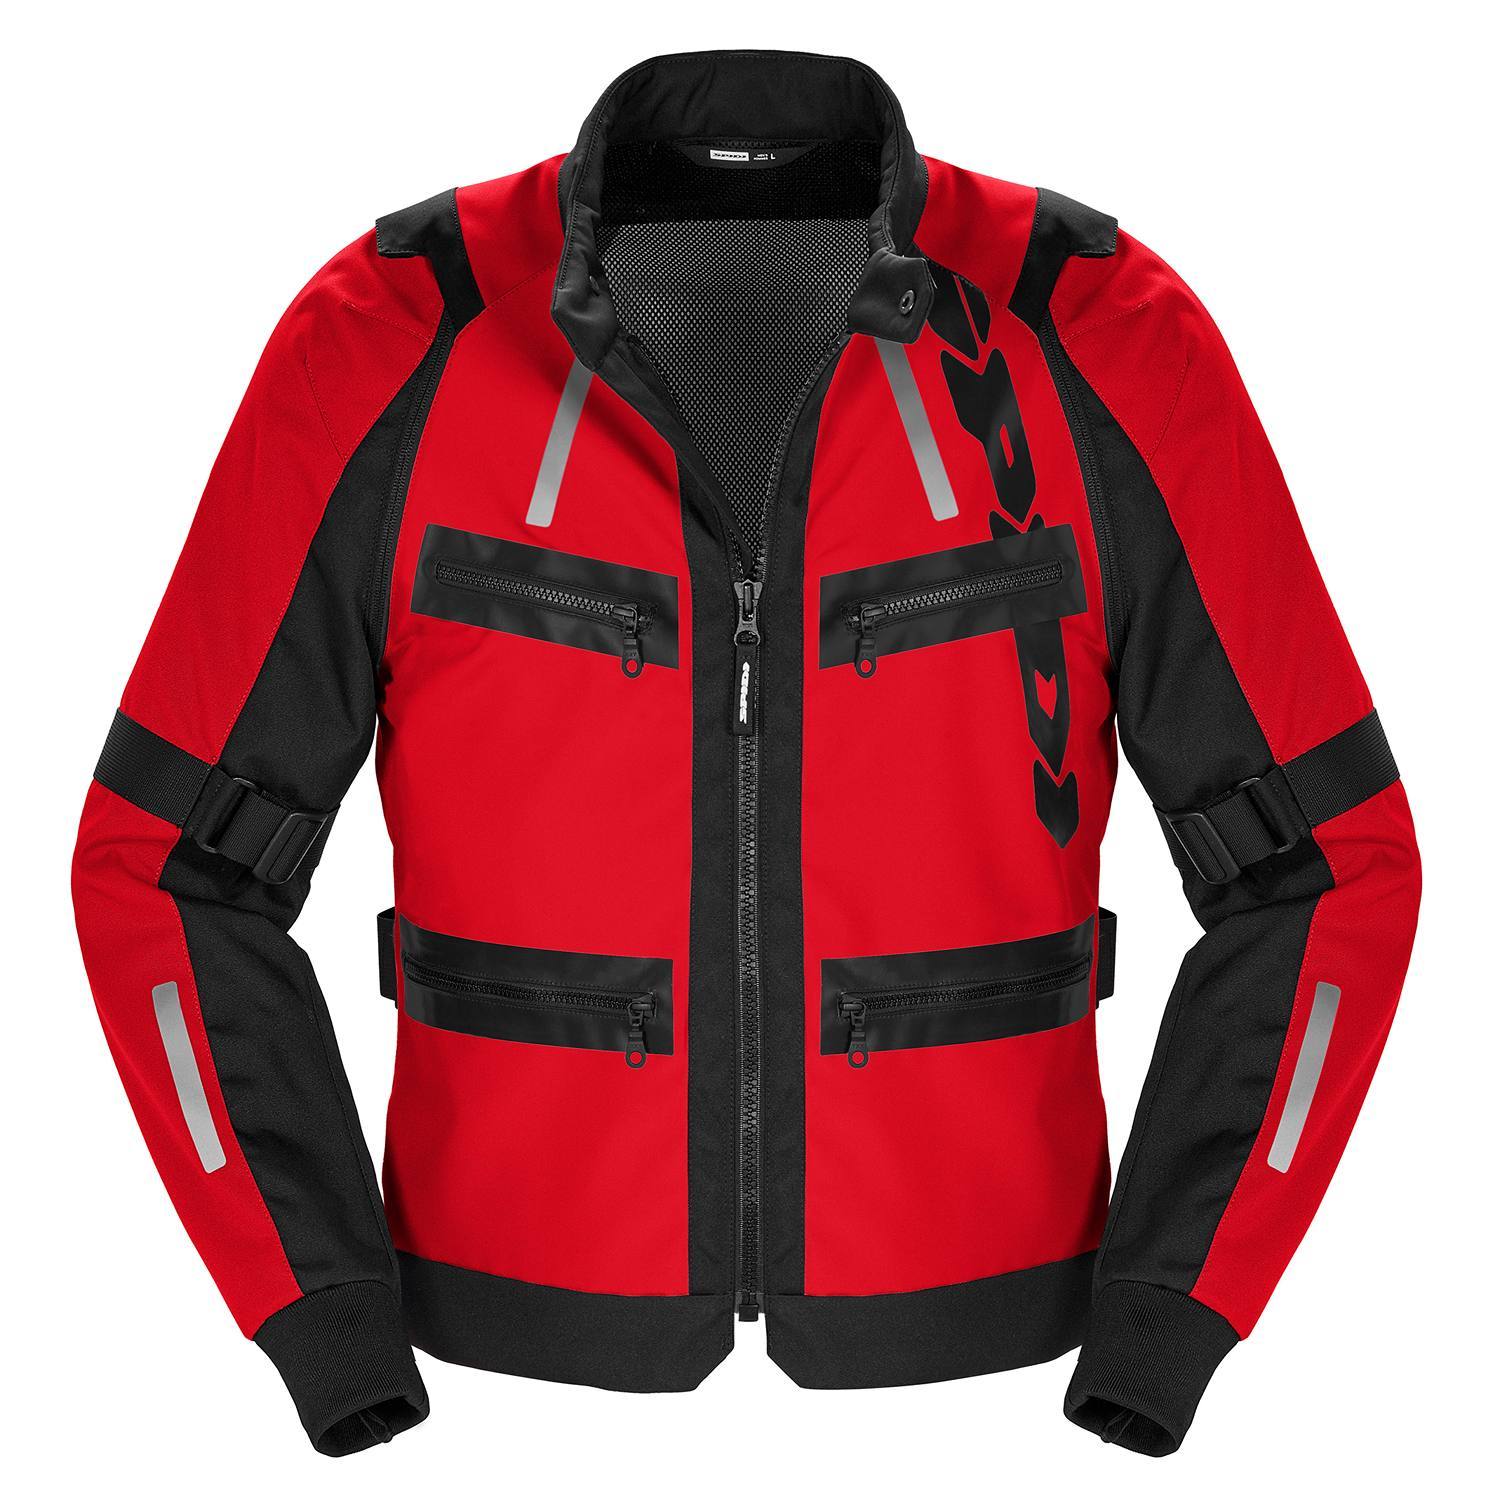 Image of Spidi Enduro Pro Jacket Red Size M ID 8030161484946